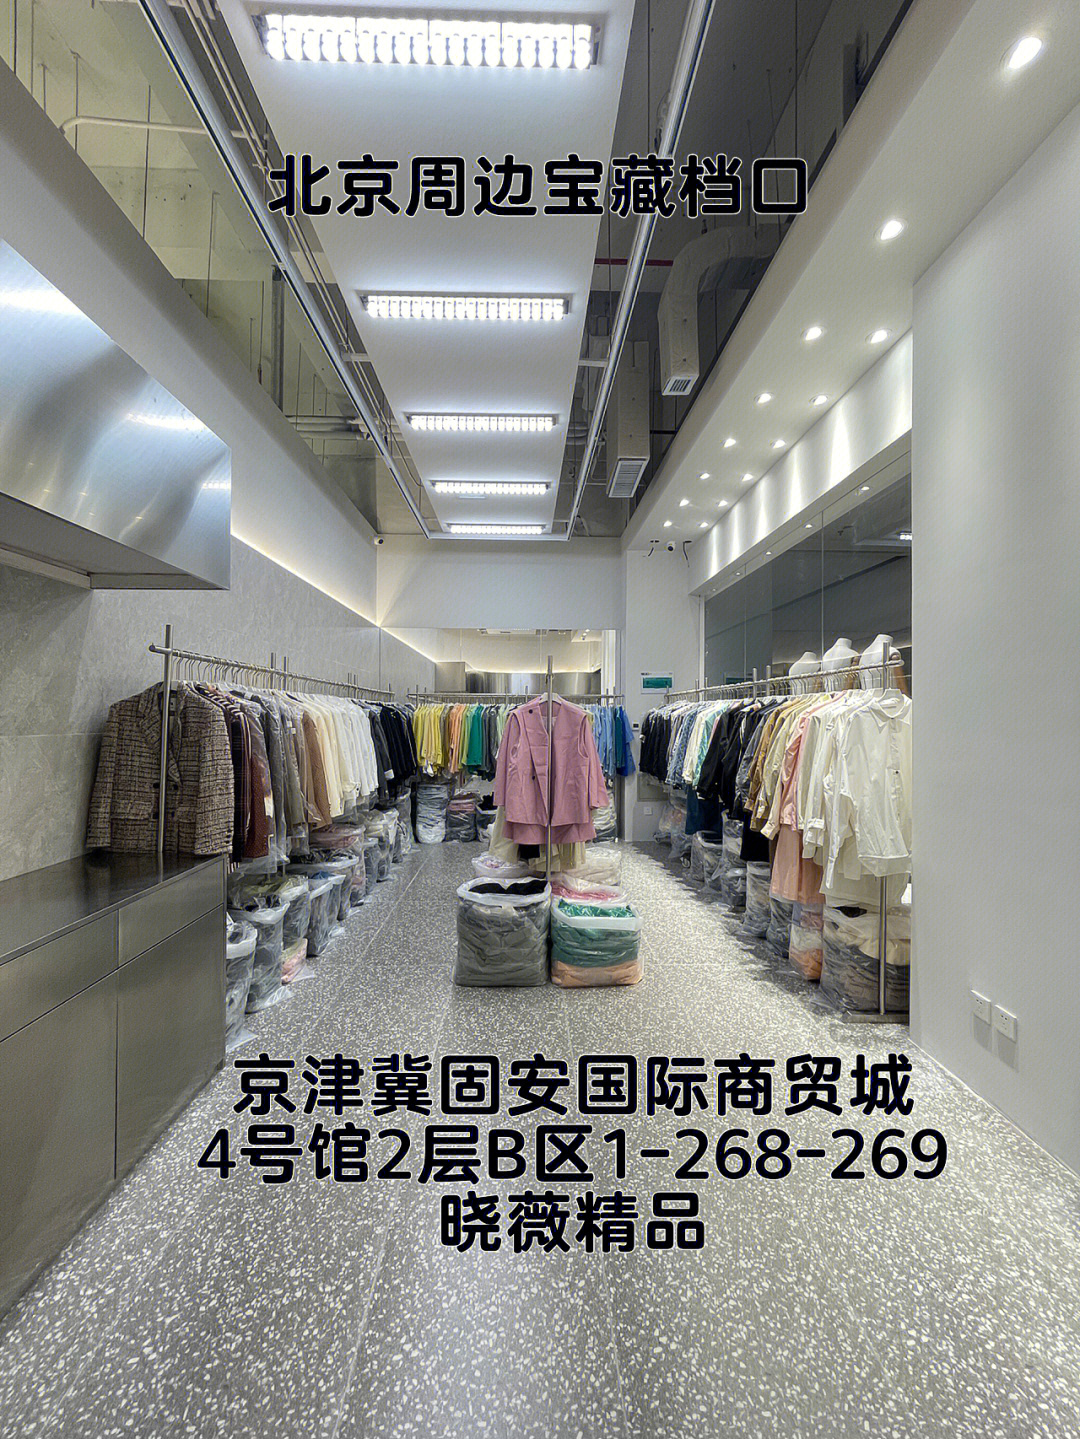 服装批发市场北京最大的服装批发市场